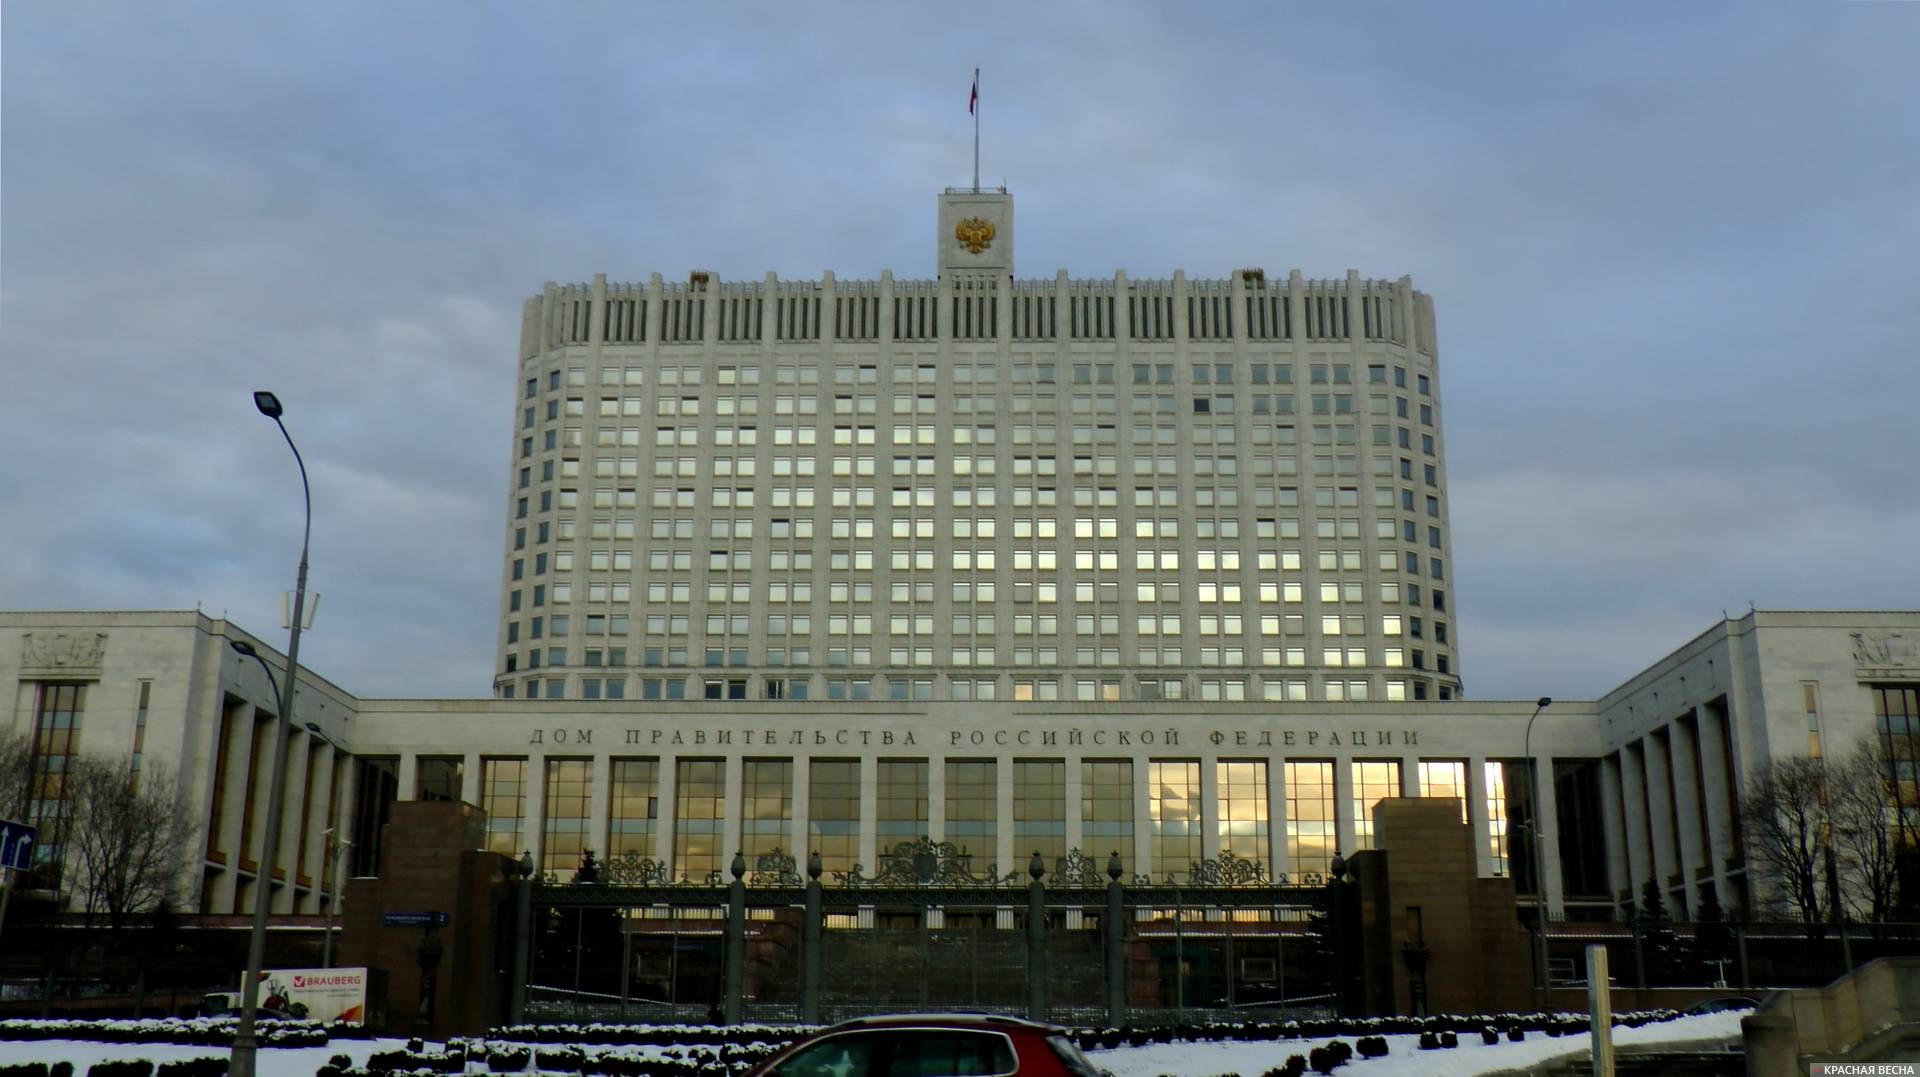 Дом Правительства РФ (Белый дом)